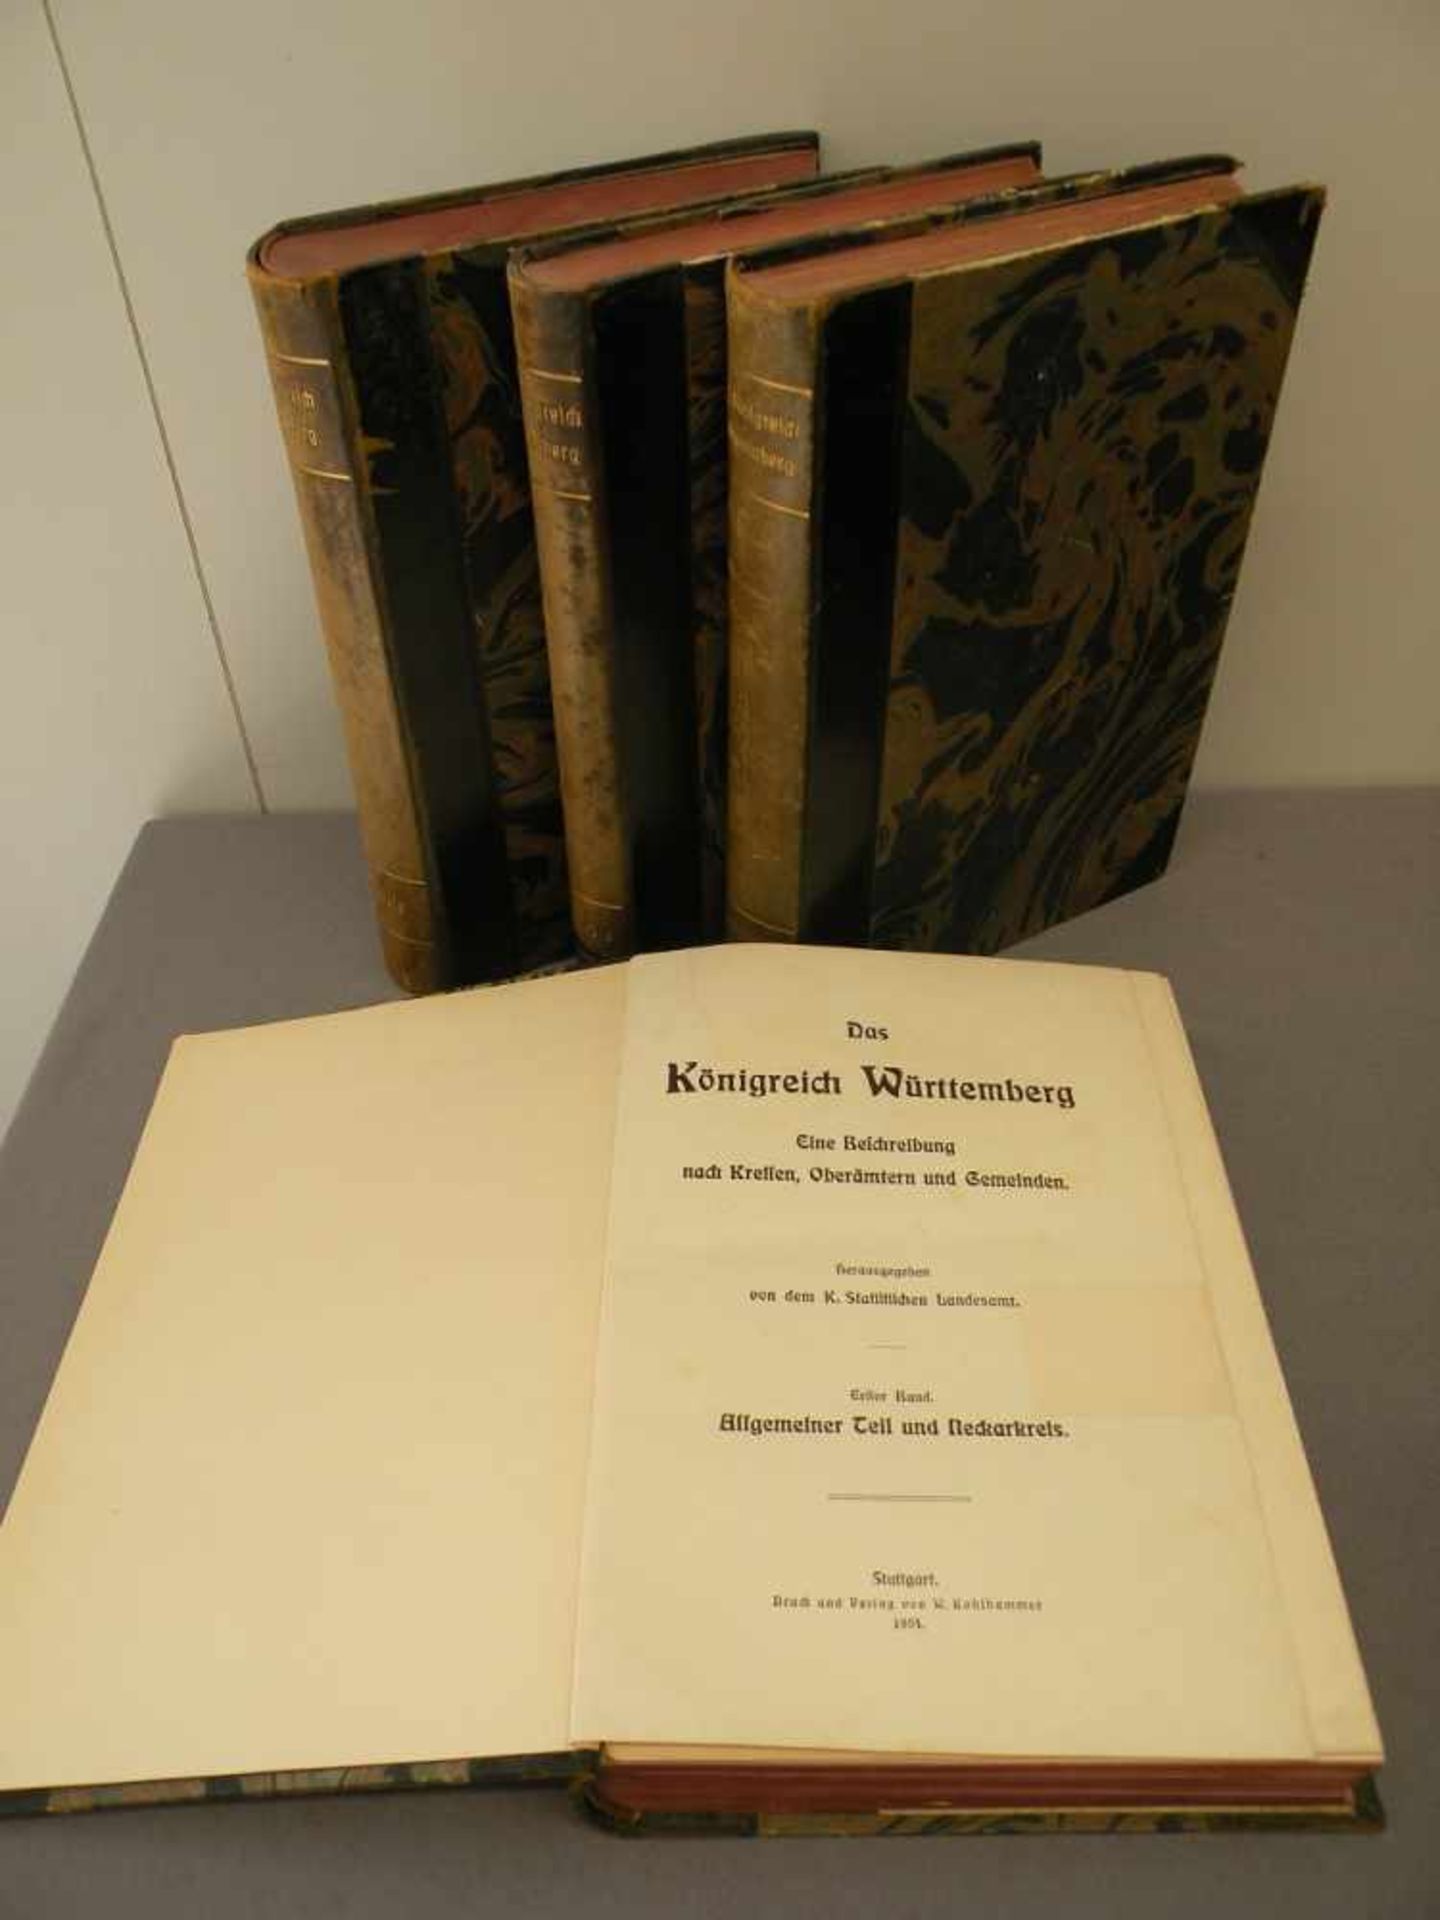 4 Bücher "Das Königreich Württemberg", Band 1-4, illustriert, 1904